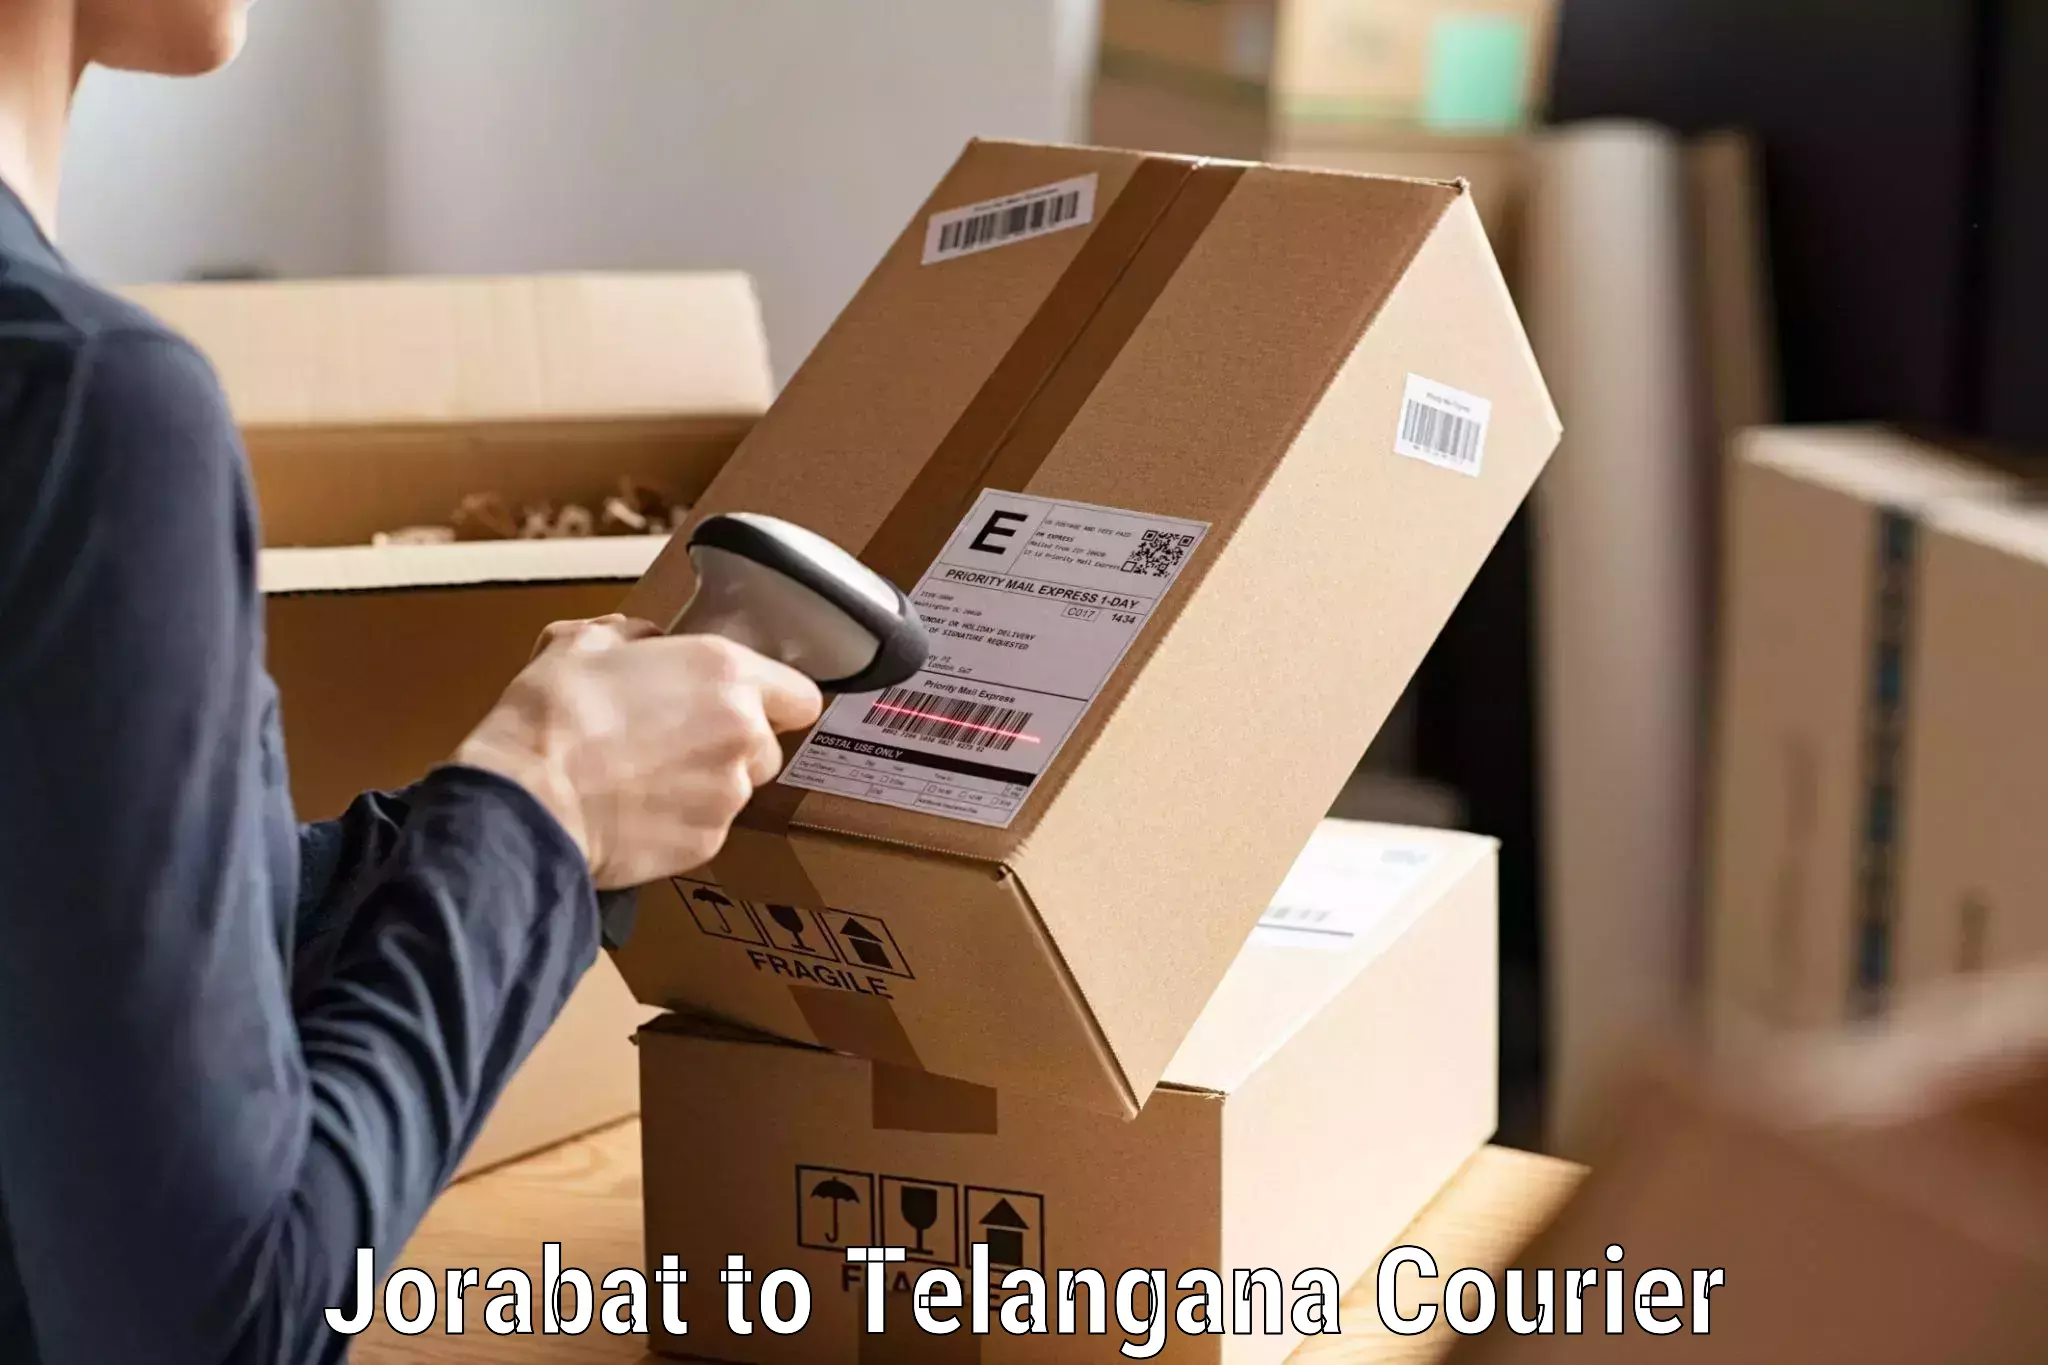 Local delivery service Jorabat to Kothagudem